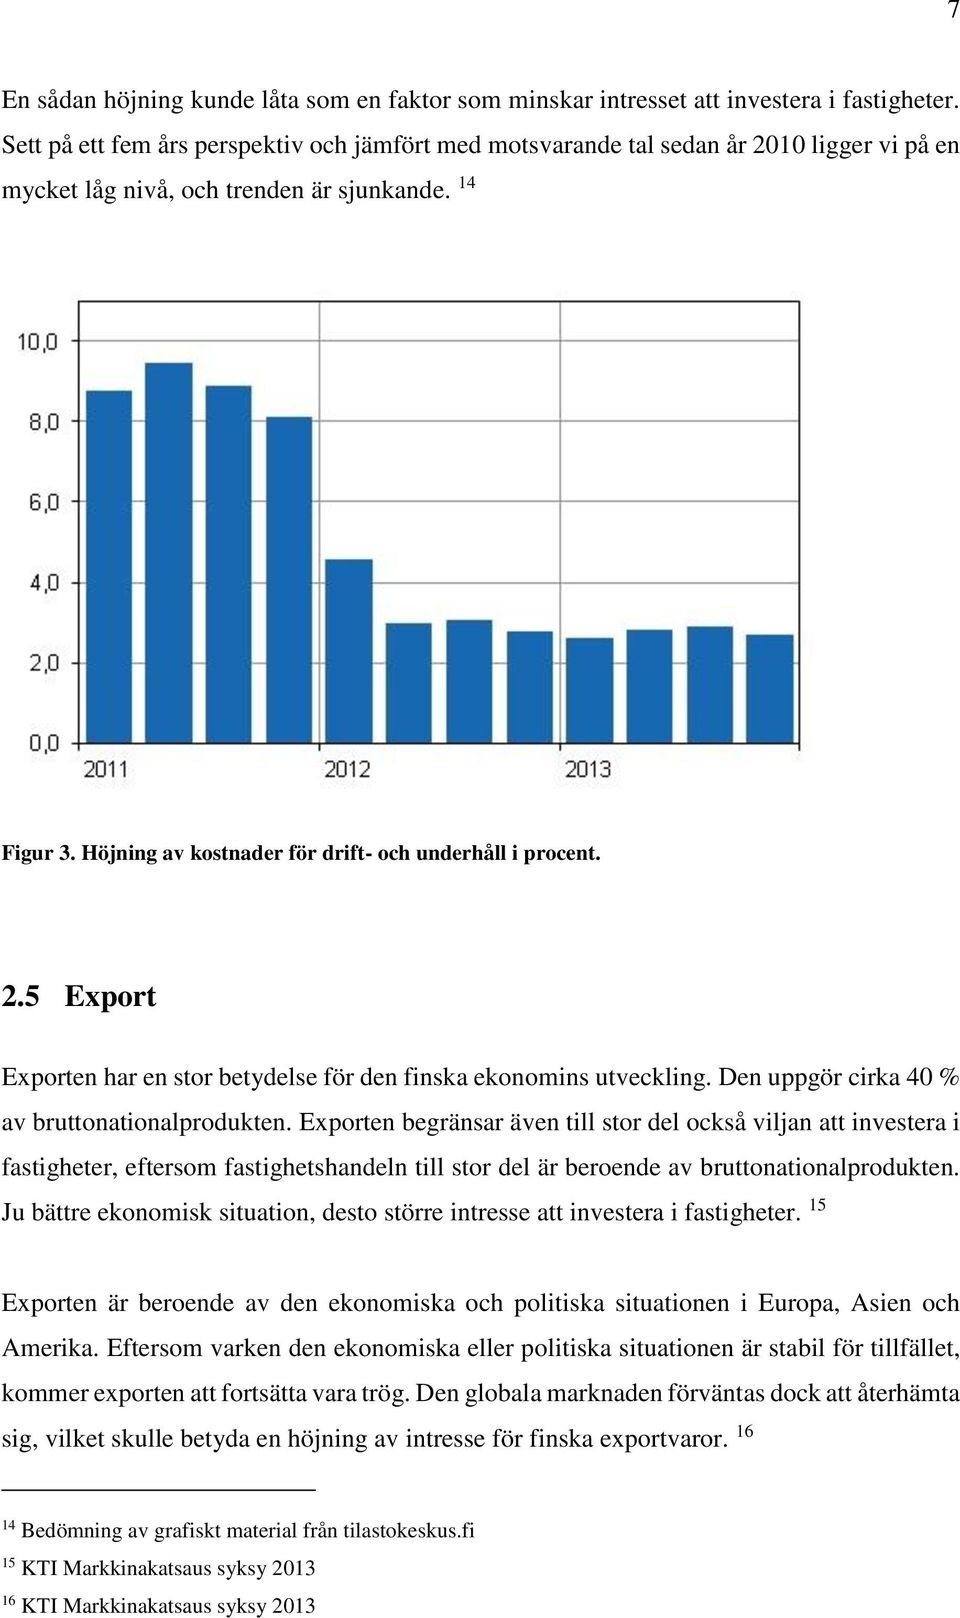 Höjning av kostnader för drift- och underhåll i procent. 2.5 Export Exporten har en stor betydelse för den finska ekonomins utveckling. Den uppgör cirka 40 % av bruttonationalprodukten.